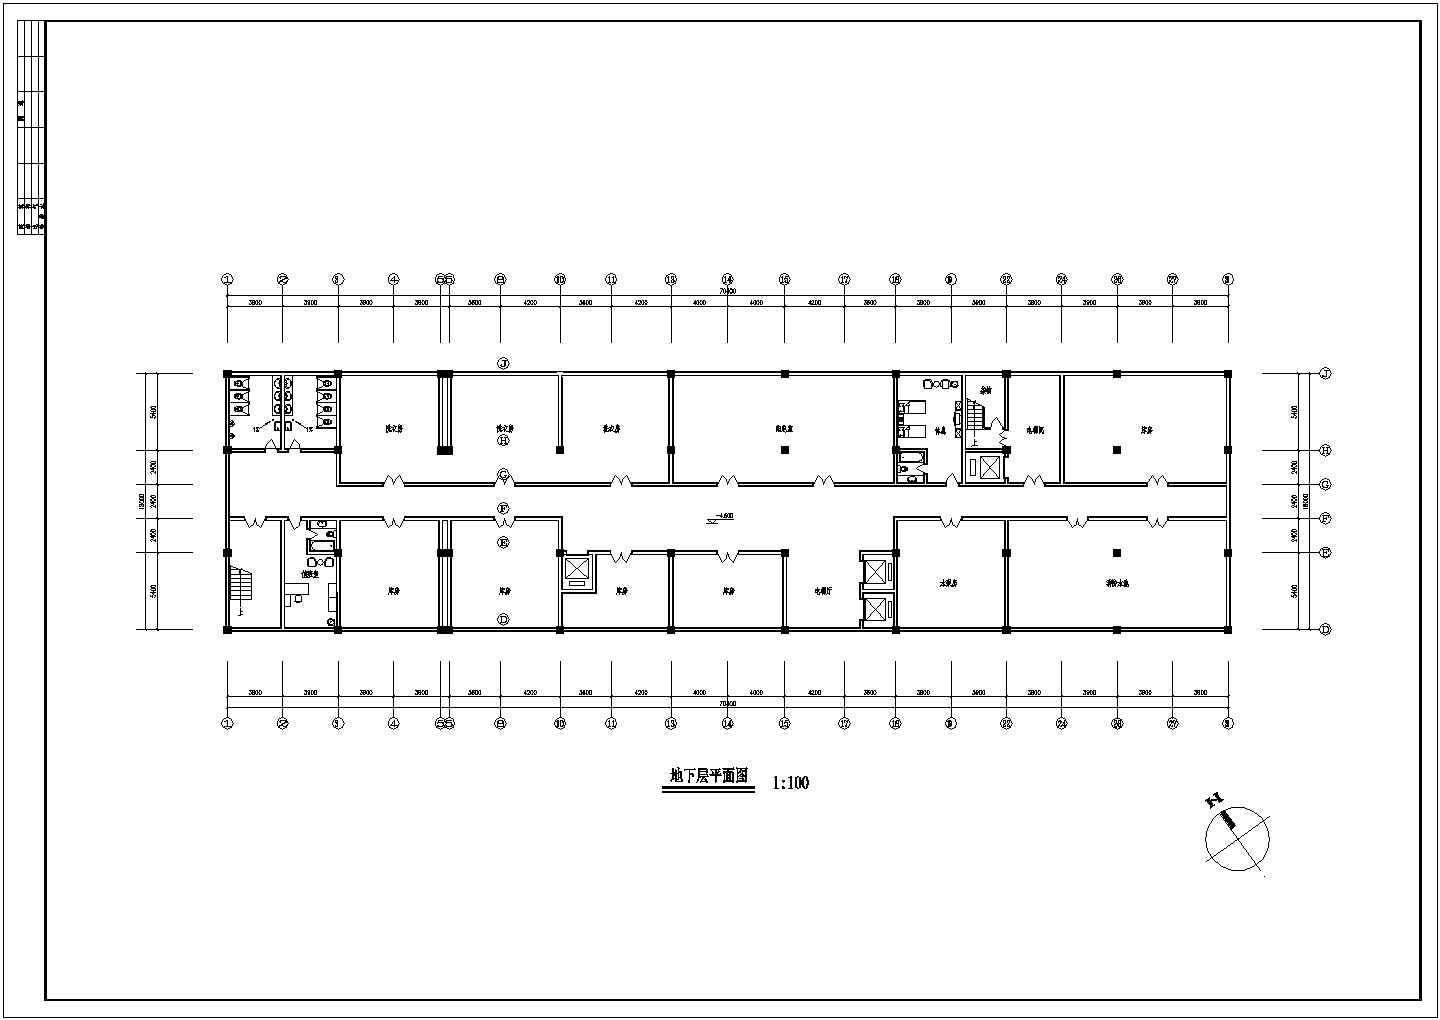 光华大酒店整体改造设计施工CAD图纸(总图)